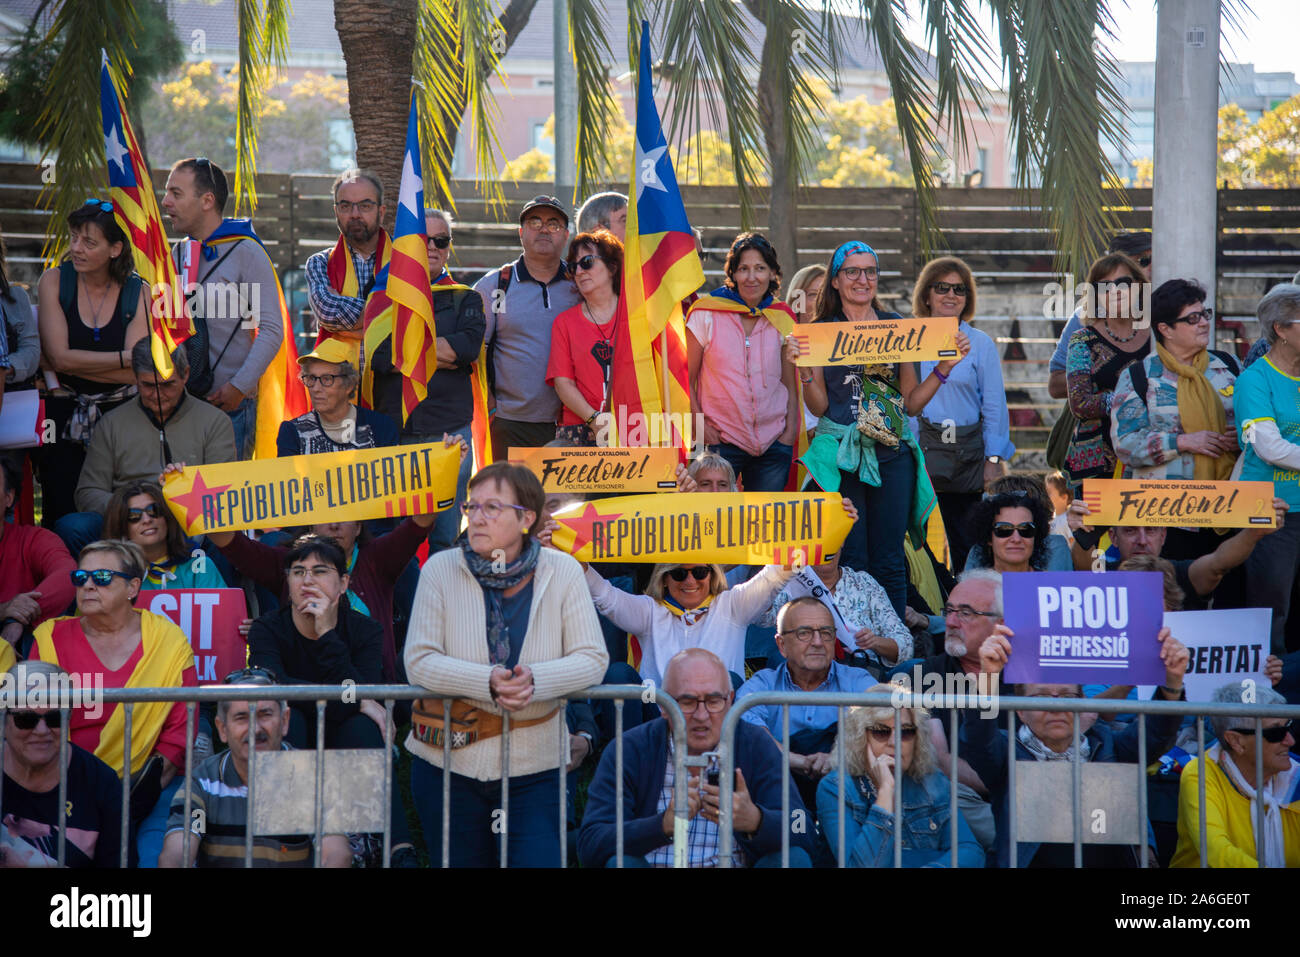 Barcelona Katalonien El Dia 26 de Mayo 2019 la Verein se manifiesta separatista de Barcelona con el lema Libertad presos políticos BCN 2019 Stockfoto